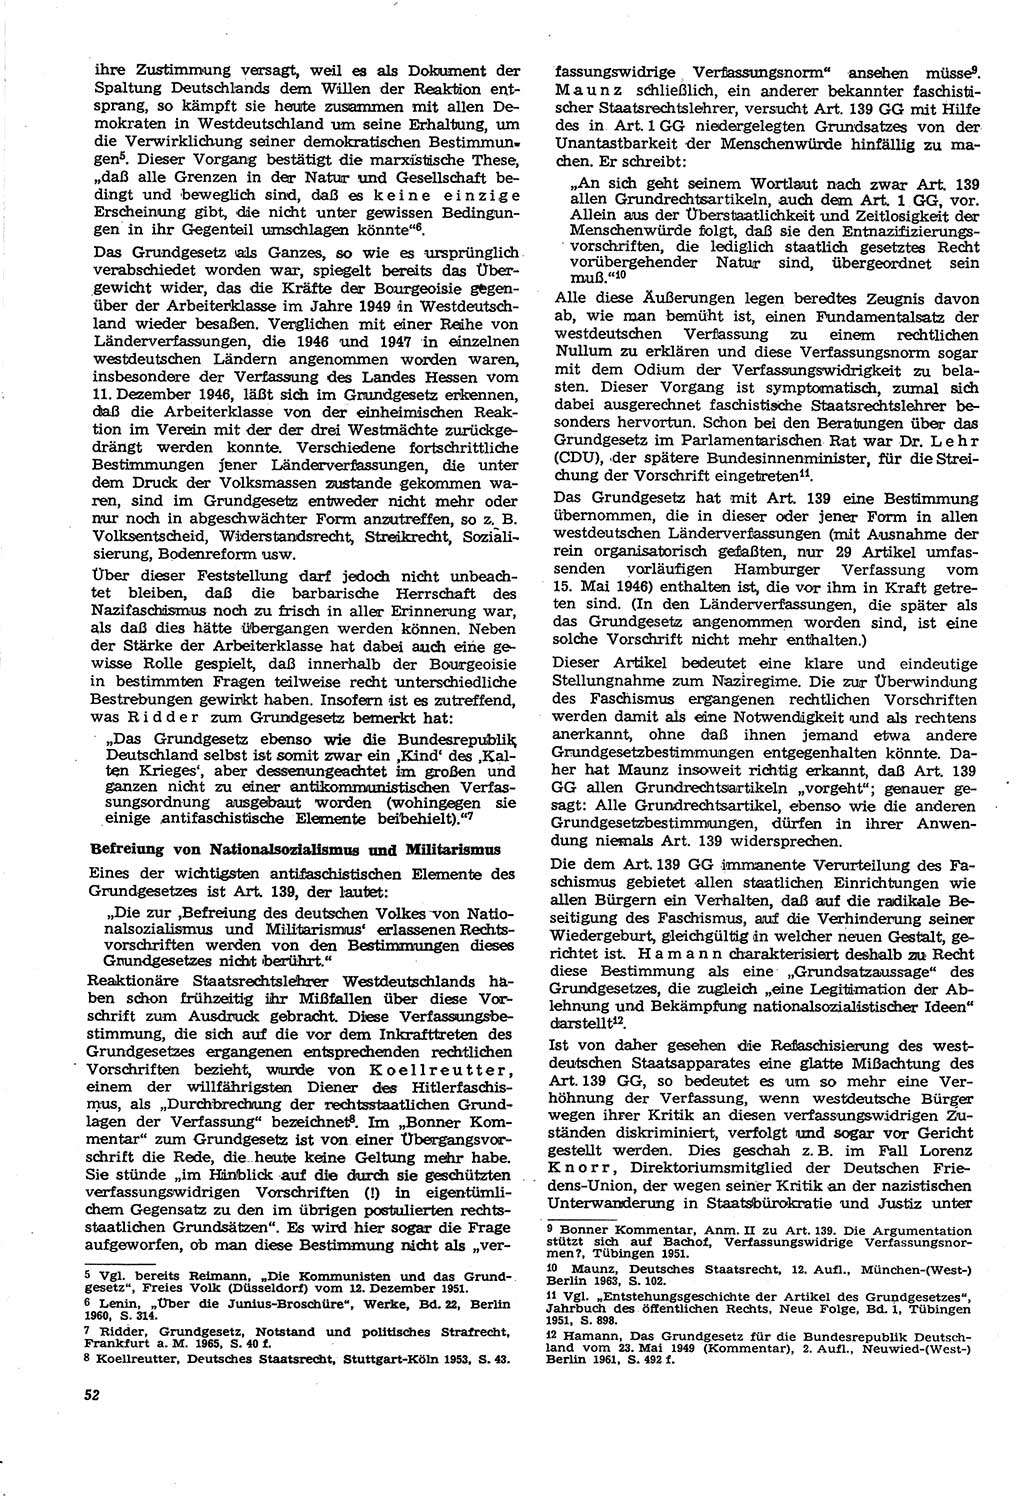 Neue Justiz (NJ), Zeitschrift für Recht und Rechtswissenschaft [Deutsche Demokratische Republik (DDR)], 21. Jahrgang 1967, Seite 52 (NJ DDR 1967, S. 52)